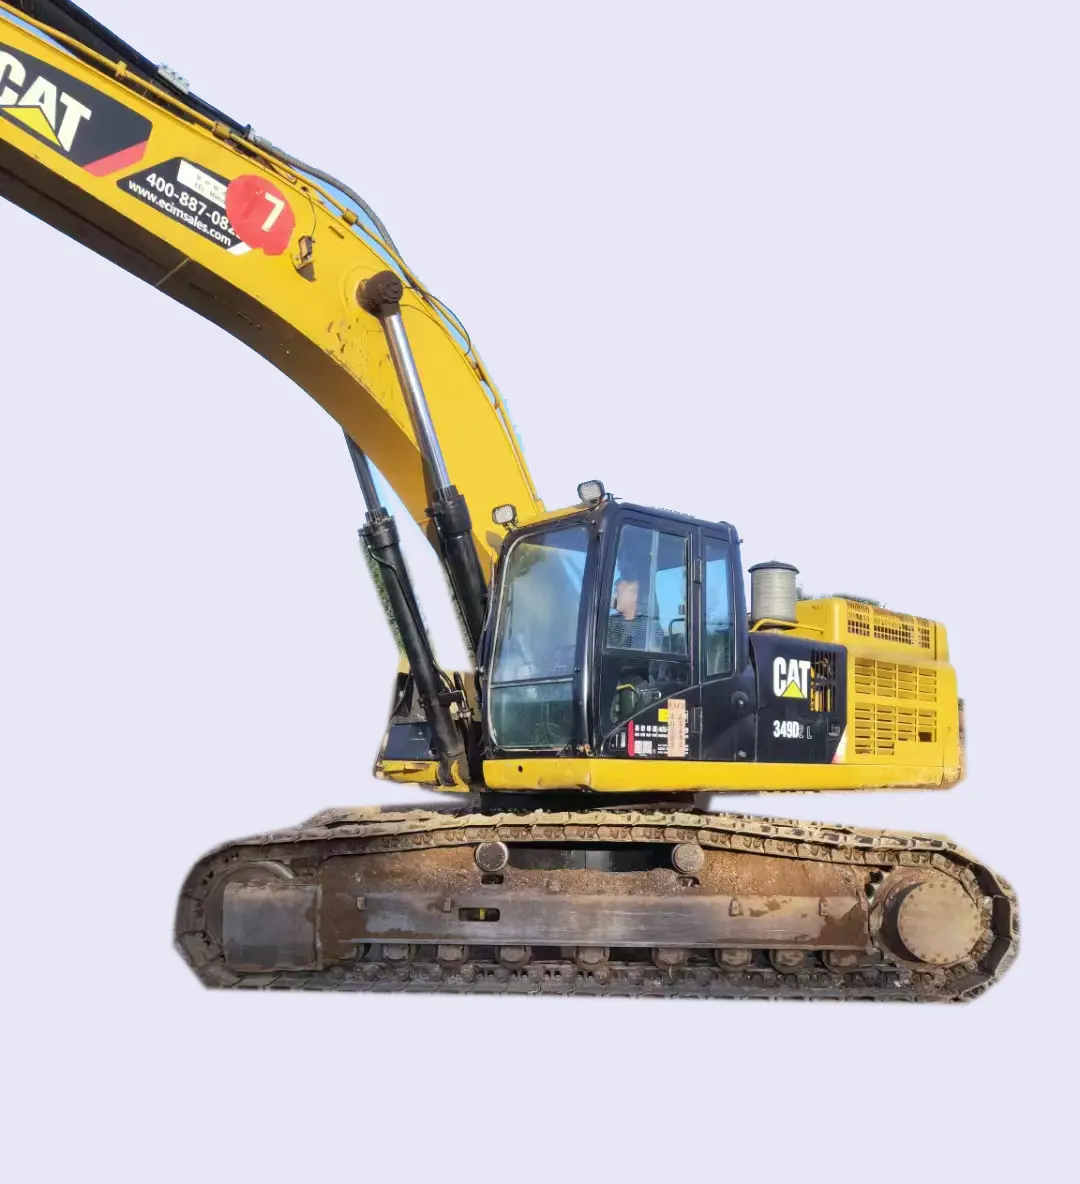 Perayap tangan kedua CAT349d penggali penggali 2018 tahun hidrolik mesin penggerak bumi peralatan